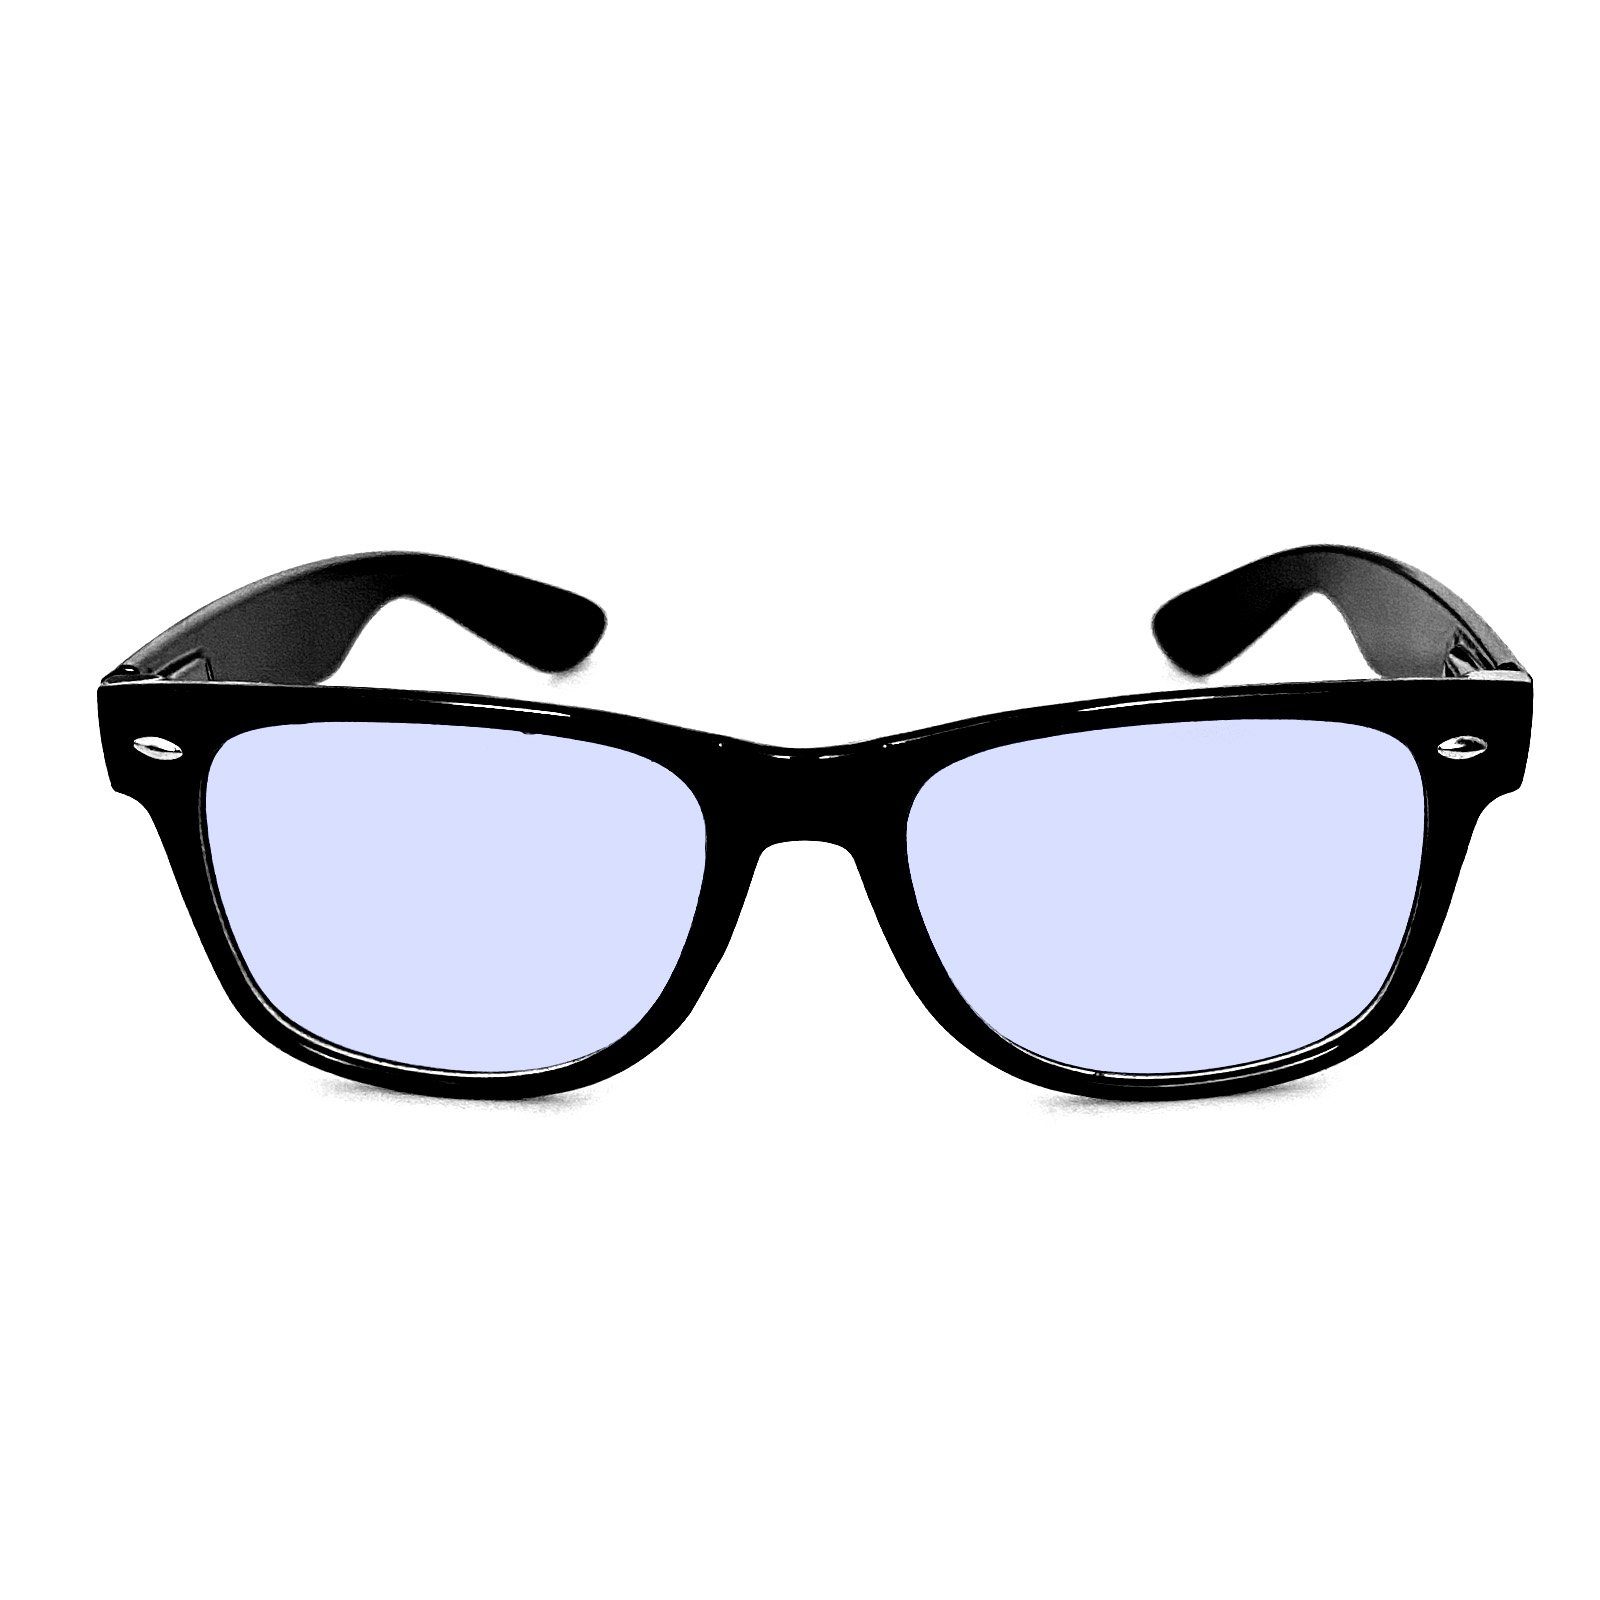 30% auf Pixto Bildschirm-Brille mit Blaufilter - Students